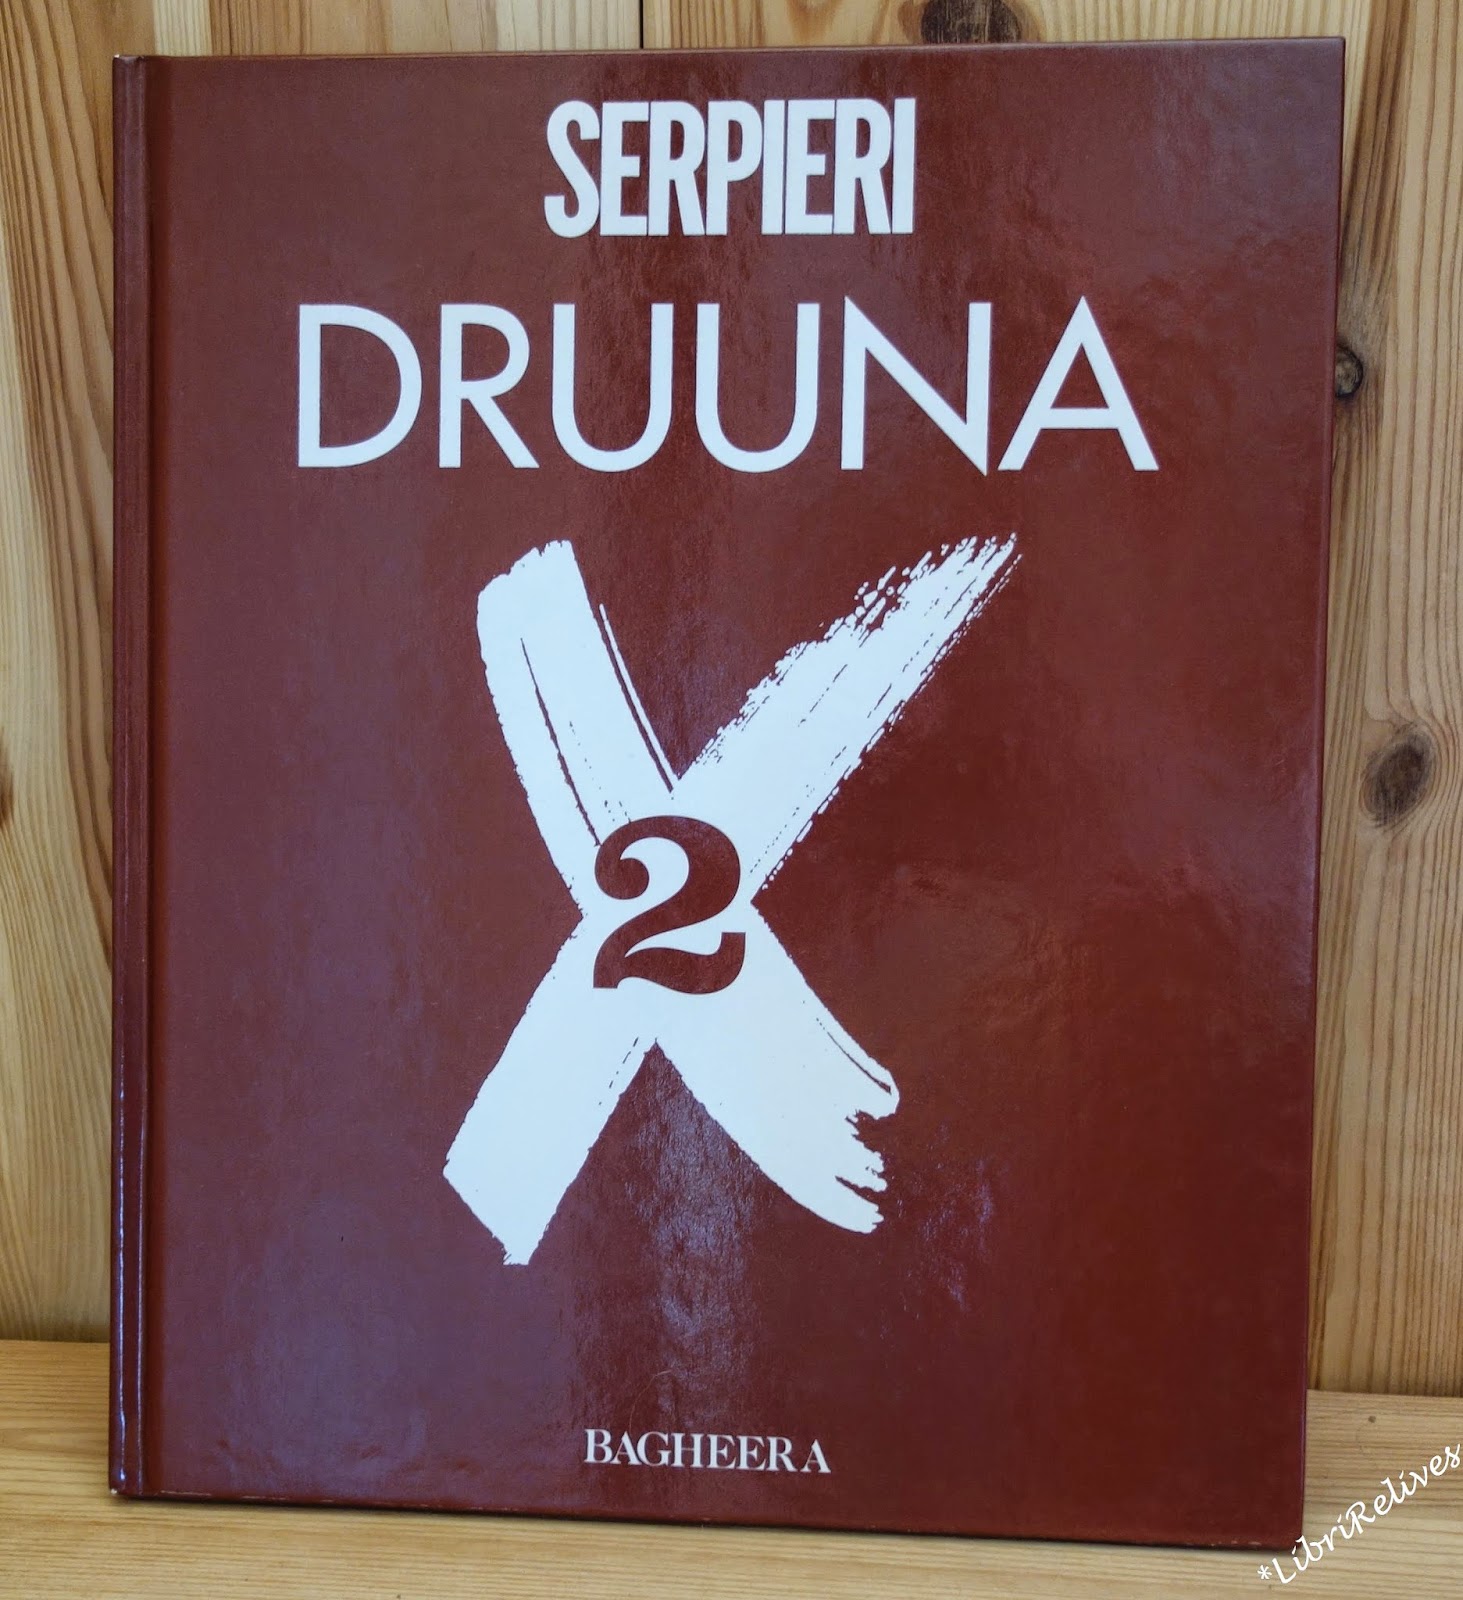 Druuna X 2